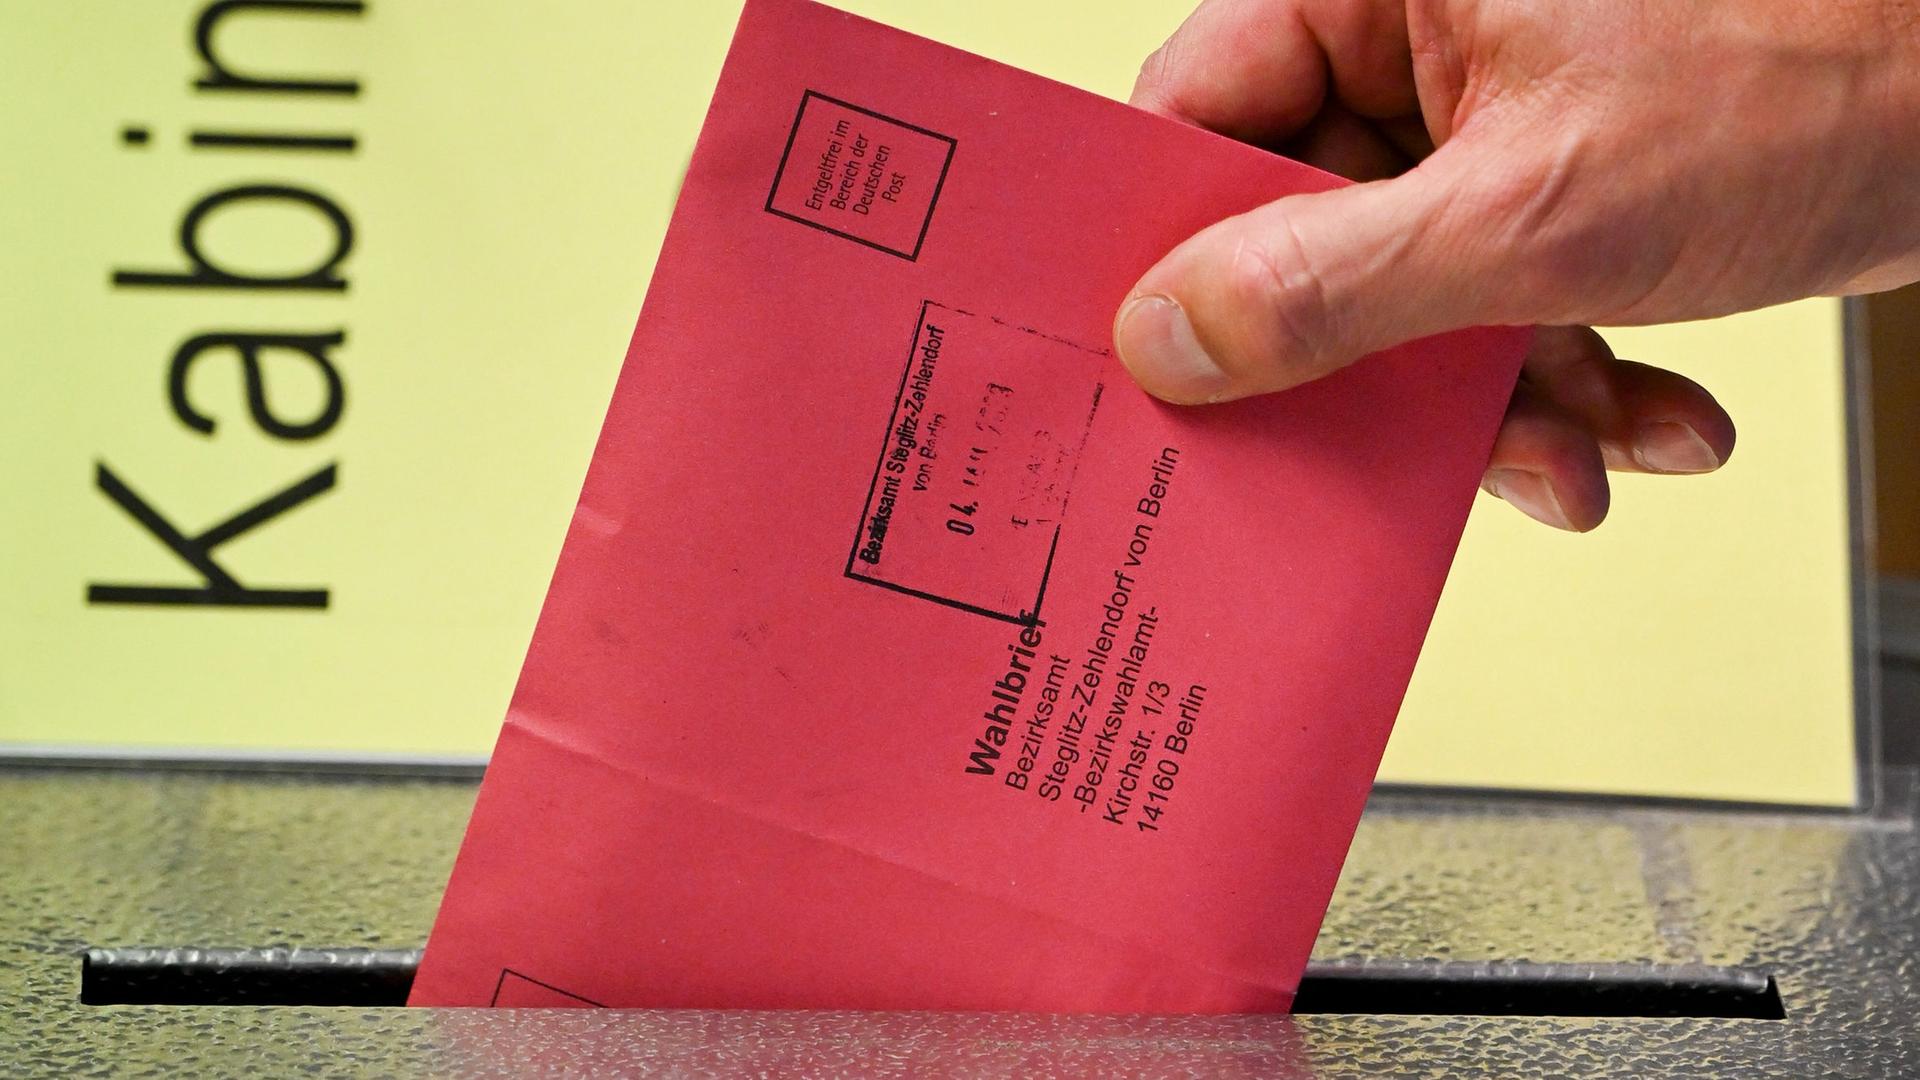 Zum Beginn der Briefwahl für die Wiederholungswahlen am 12. Februar zum Abgeordnetenhaus in Berlin wählt eine Person vorab und steckt Stimmzettel in einem roten Briefumschlag für die Briefwahl in die Wahlurne. Zu sehen ist nur seine Hand.